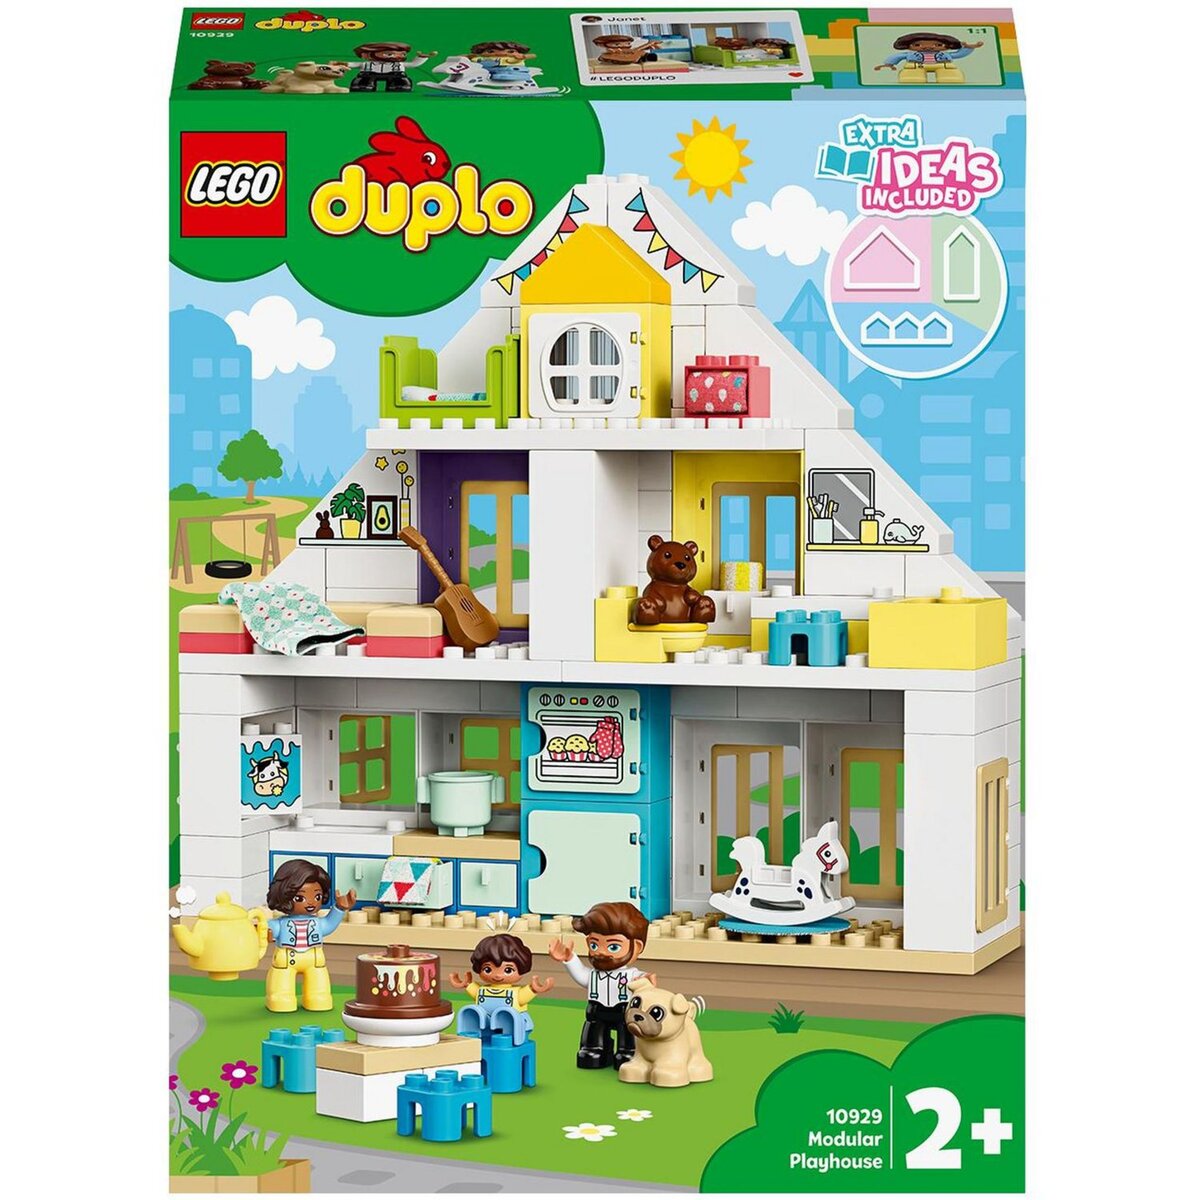 LEGO DUPLO Ma Ville 10929 La Maison Modulable 3 en 1, Maison de Poupée, Jouet Enfant 2 ans